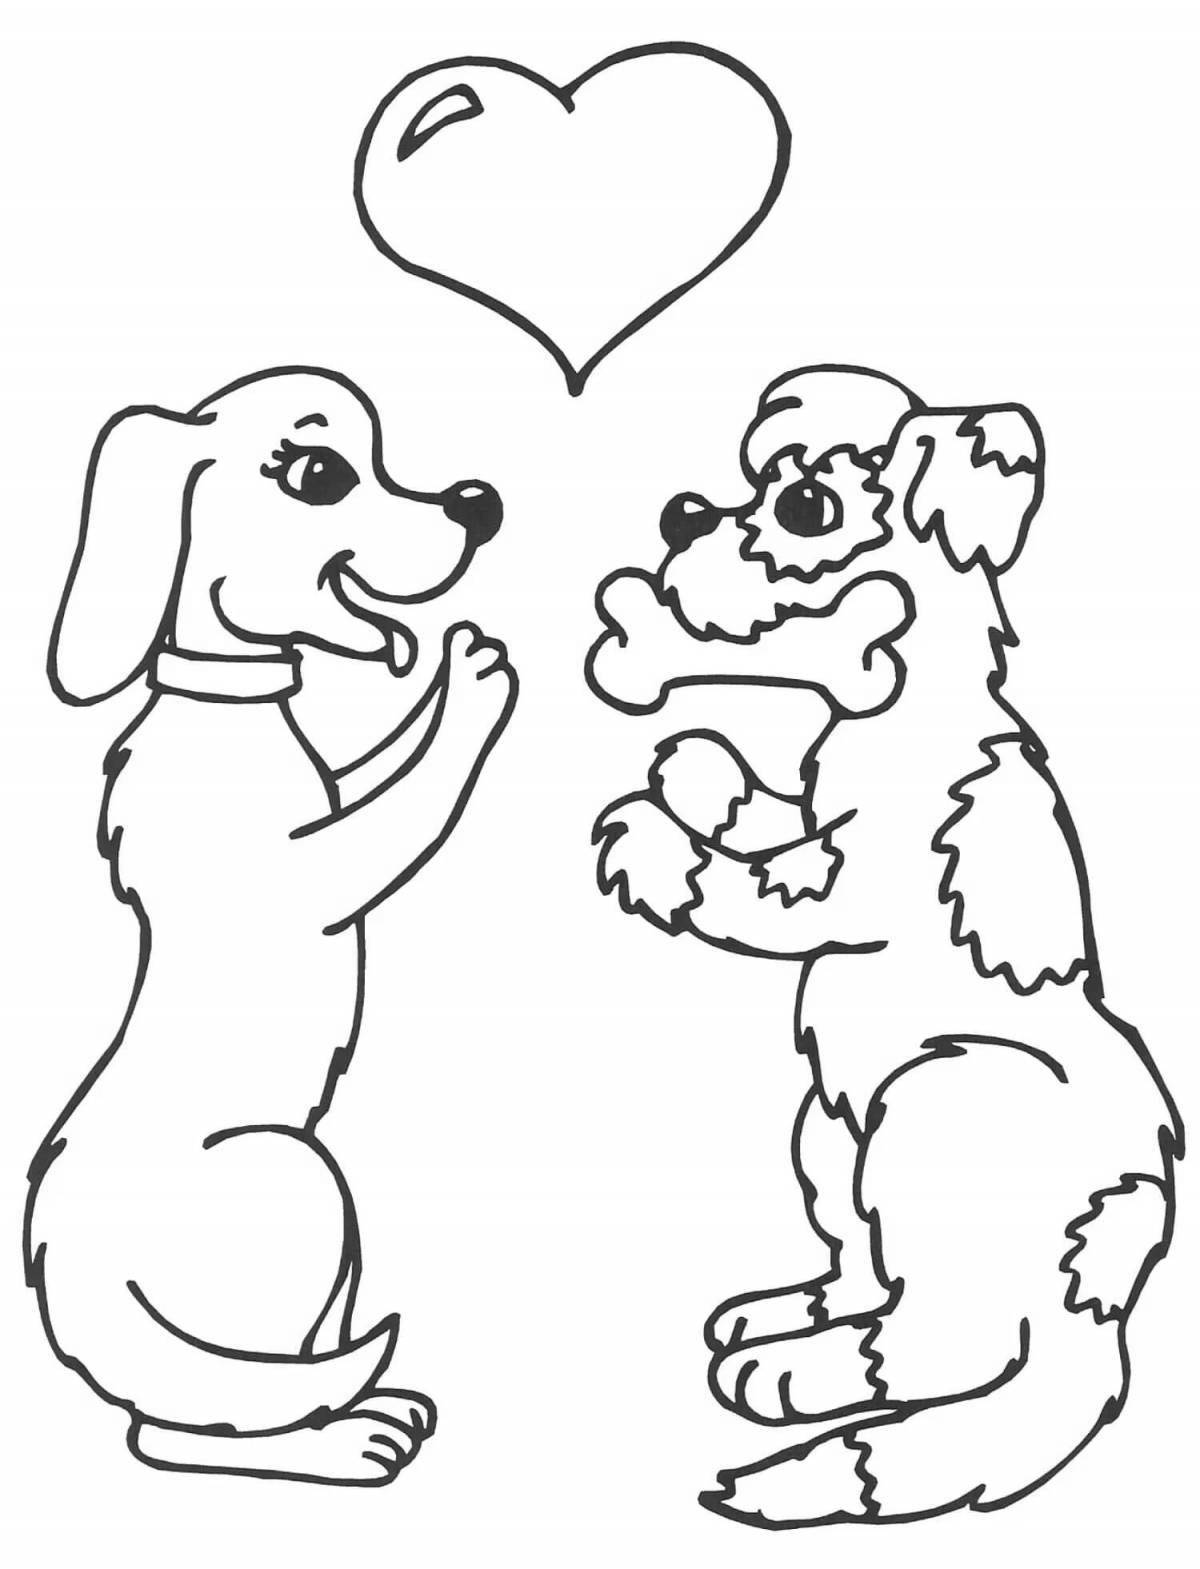 Контент-раскраска собака с сердечком